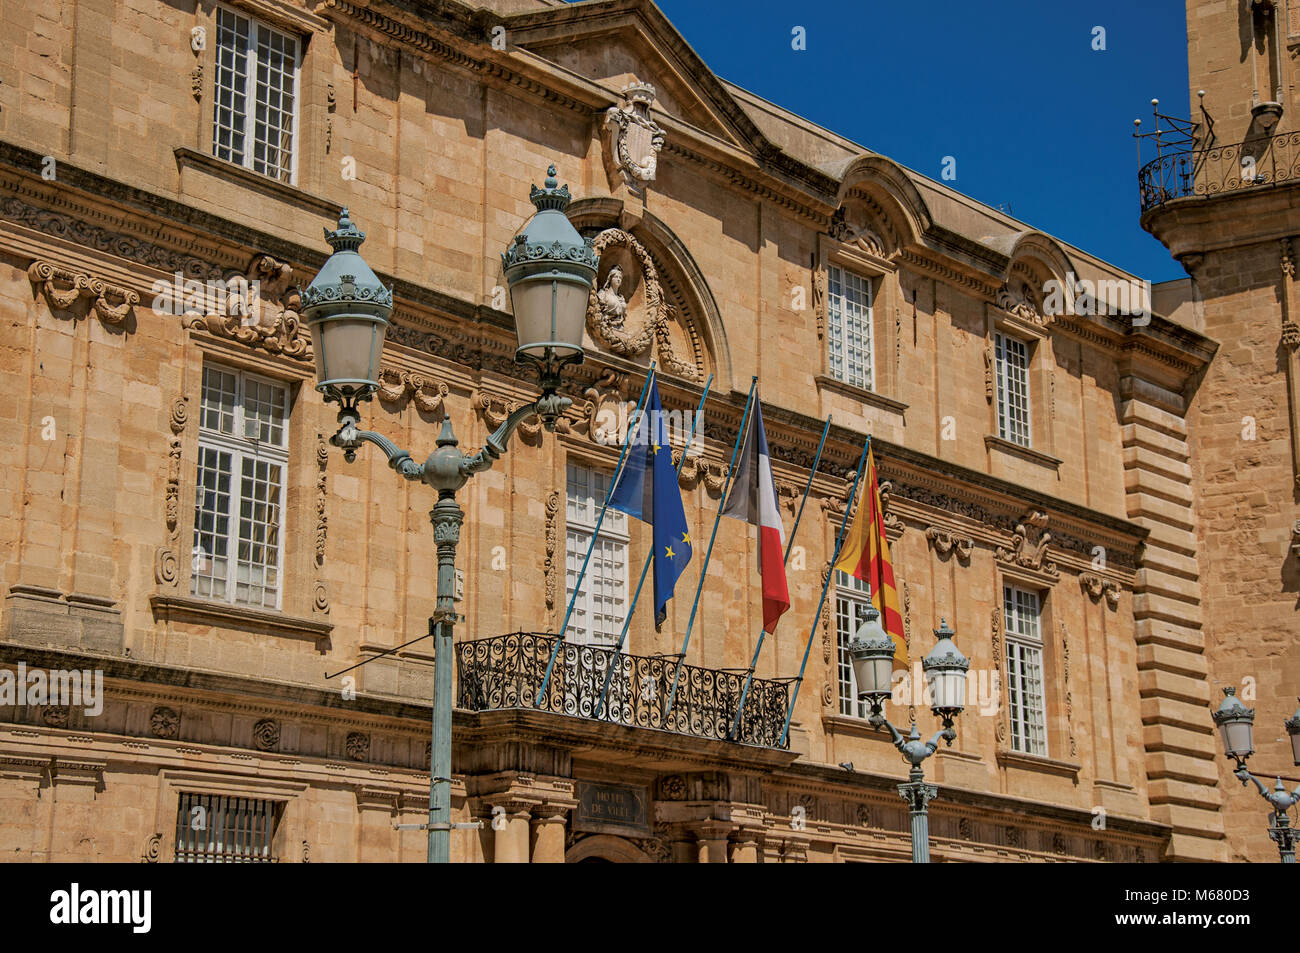 Façade de l'hôtel de ville avec des drapeaux à Aix-en-Provence, une ville agréable et vivante dans la campagne française. Région de la Provence, dans le sud-est de la France. Banque D'Images